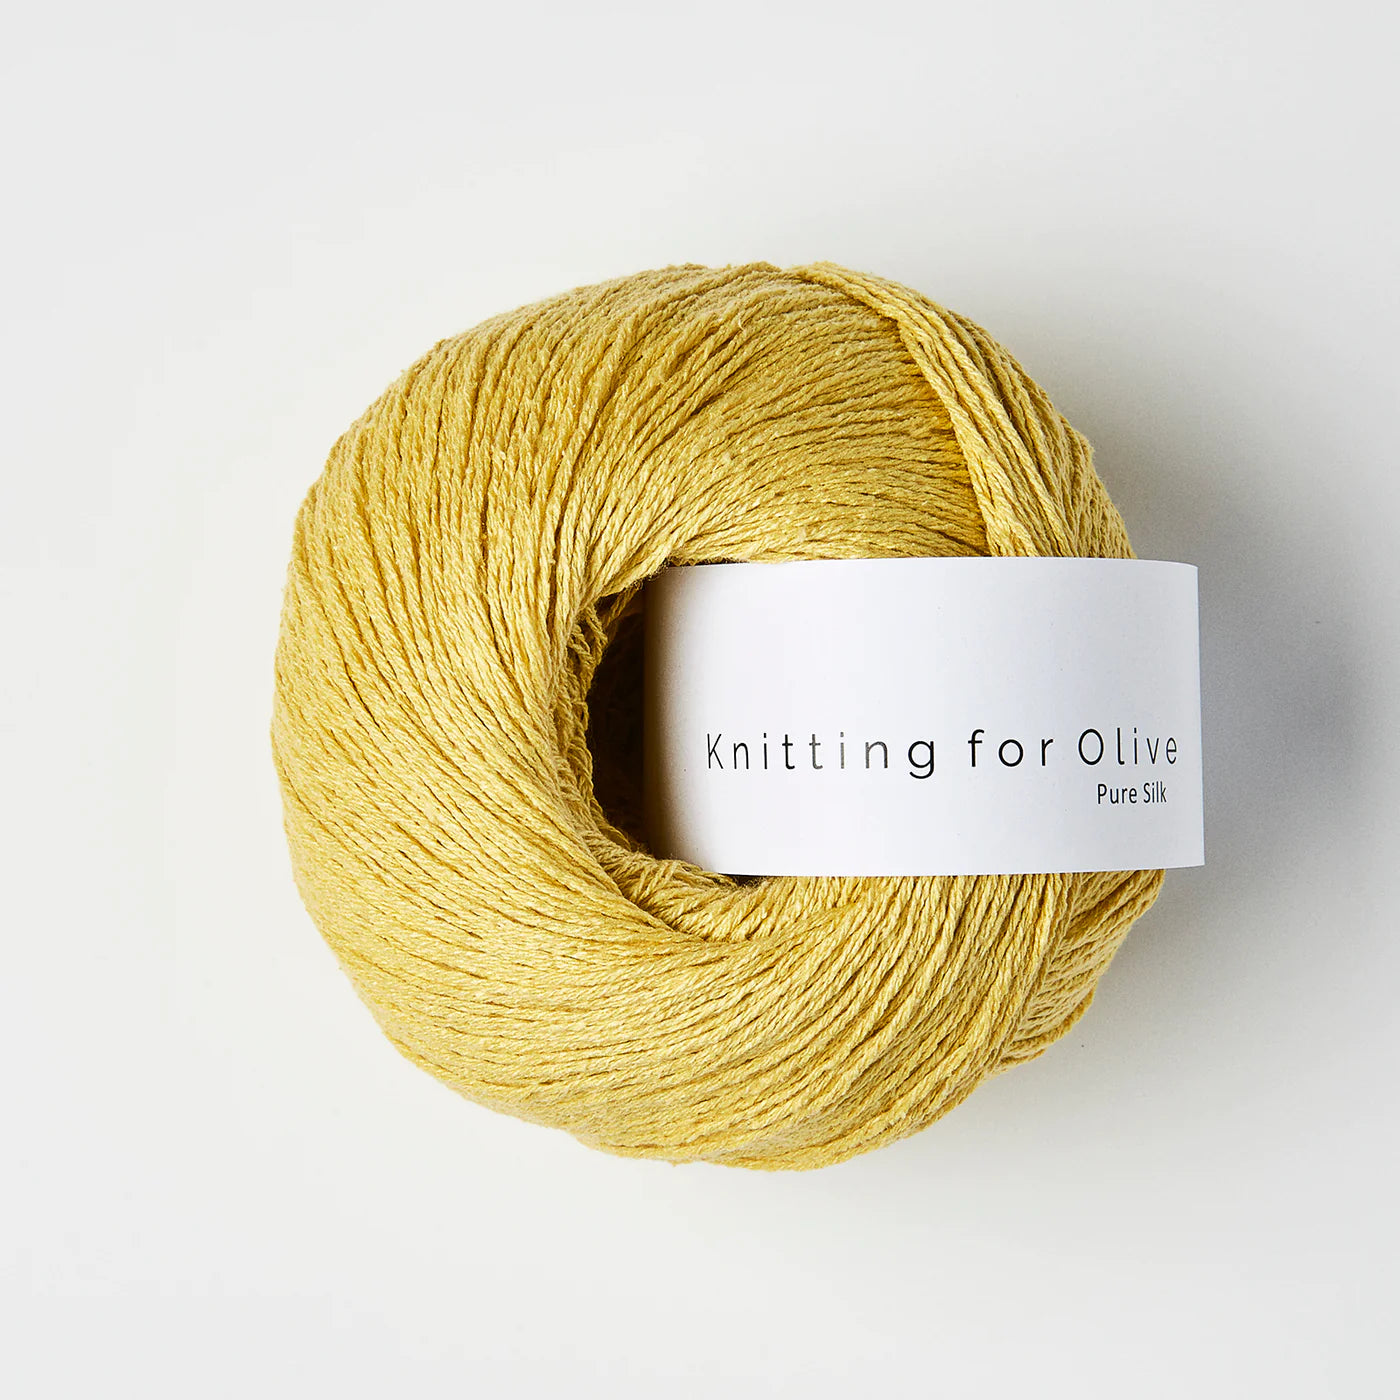 Pure Silk – EWE fine fiber goods